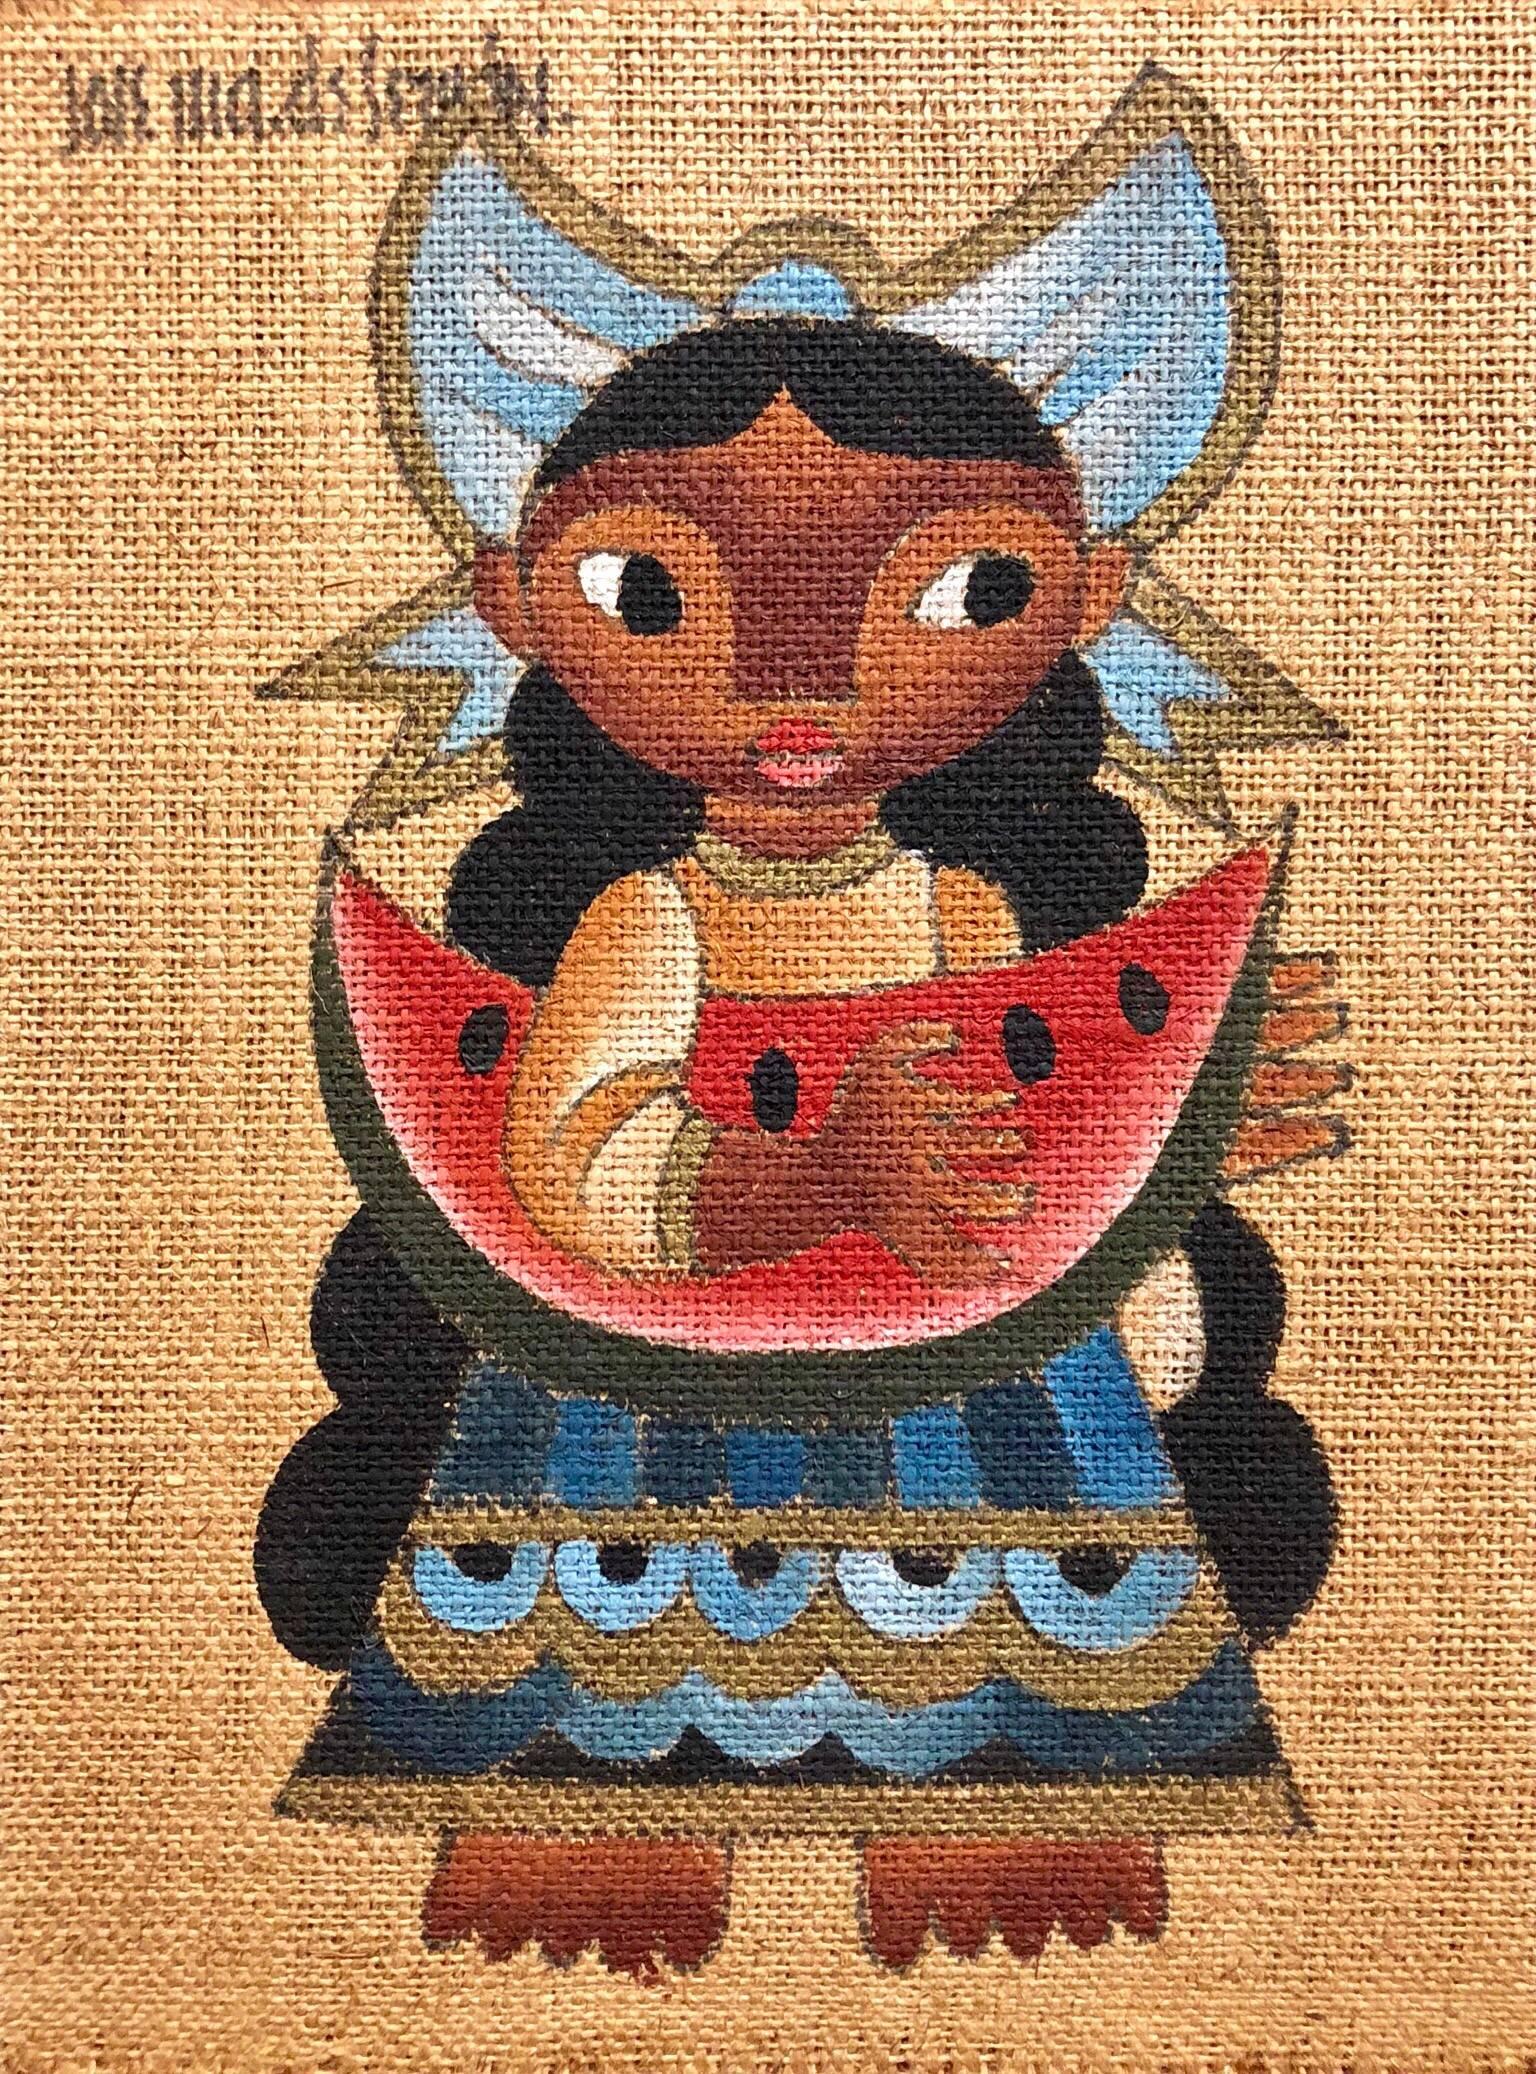 Jose Maria de Servin Figurative Painting – Folk Art Mexikanisches Mädchen mit Wassermelone Ölgemälde auf Sackleinen